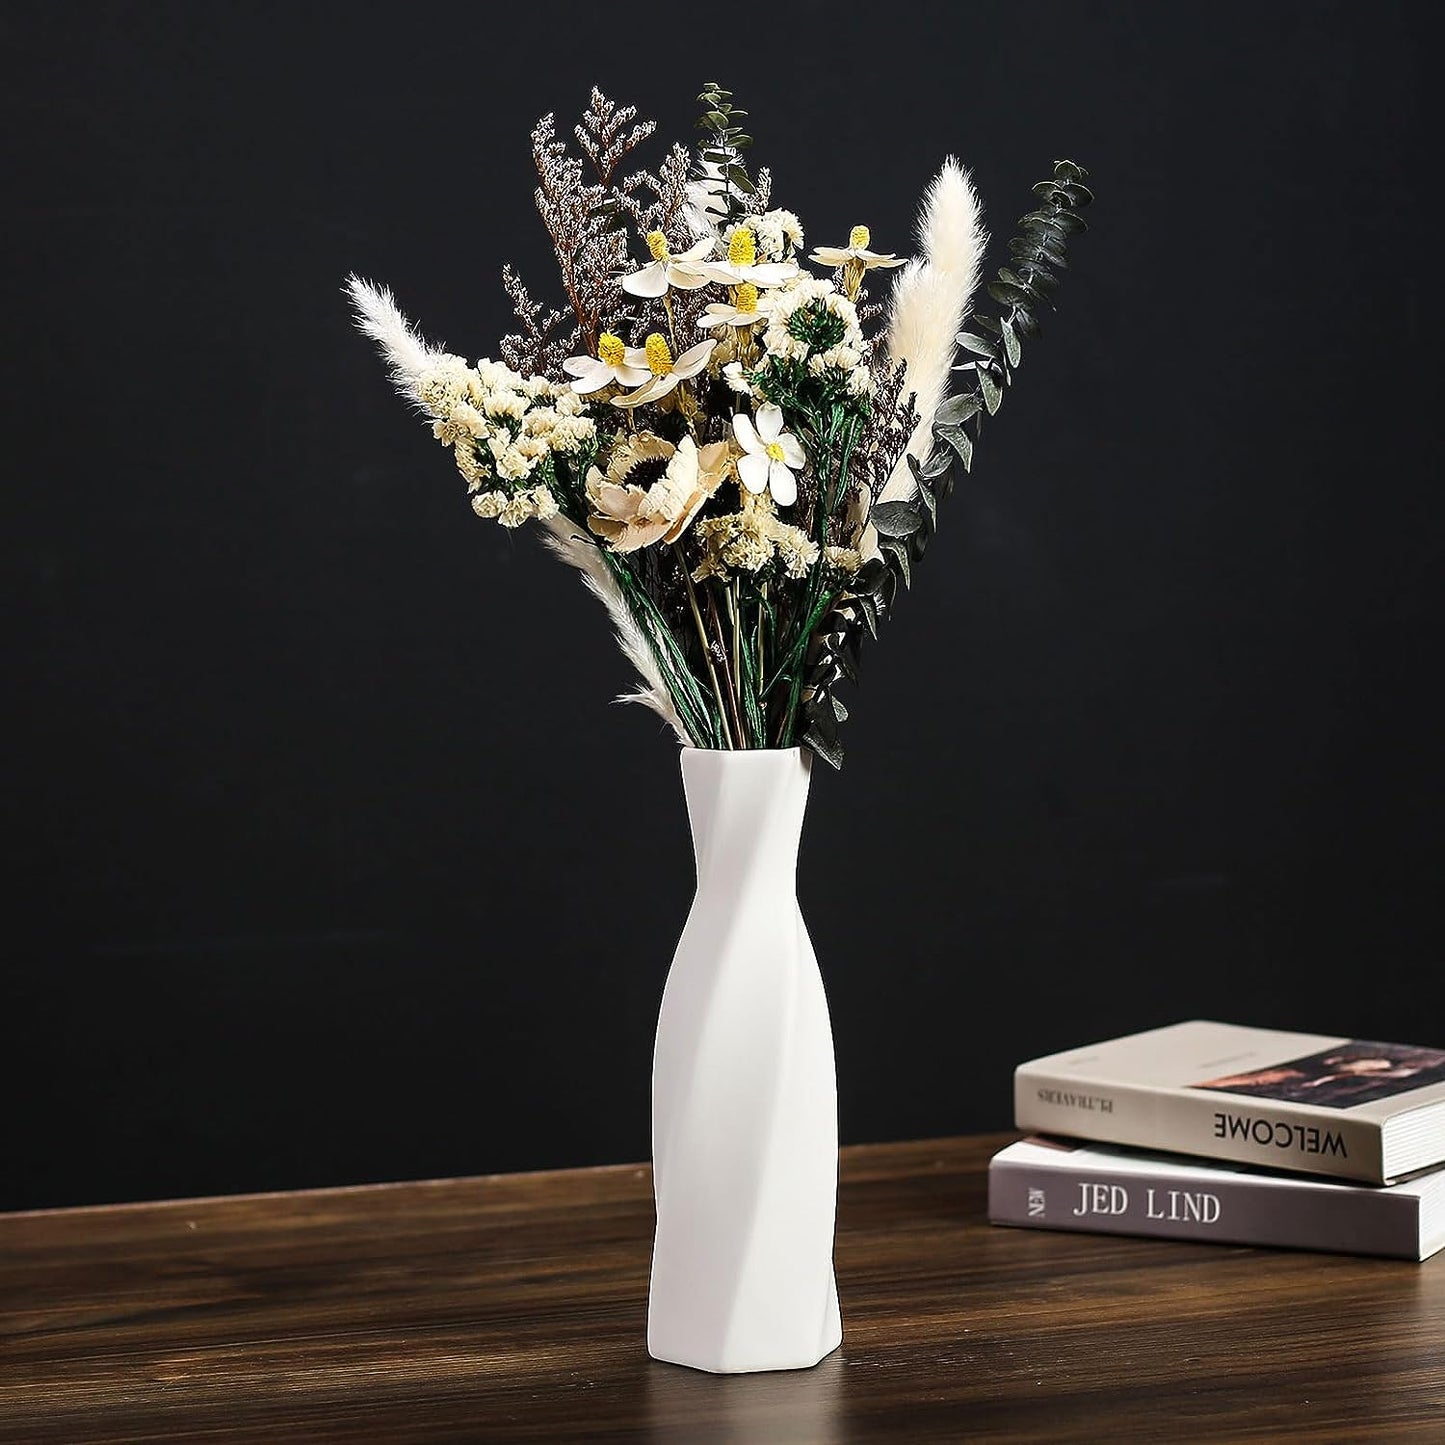 Ceramic Vase - Flowers Vase Modern Home Decor, White Geometric Decorative Vases for Living Room, Dried Flower Vase, Mantel, Table Decoration